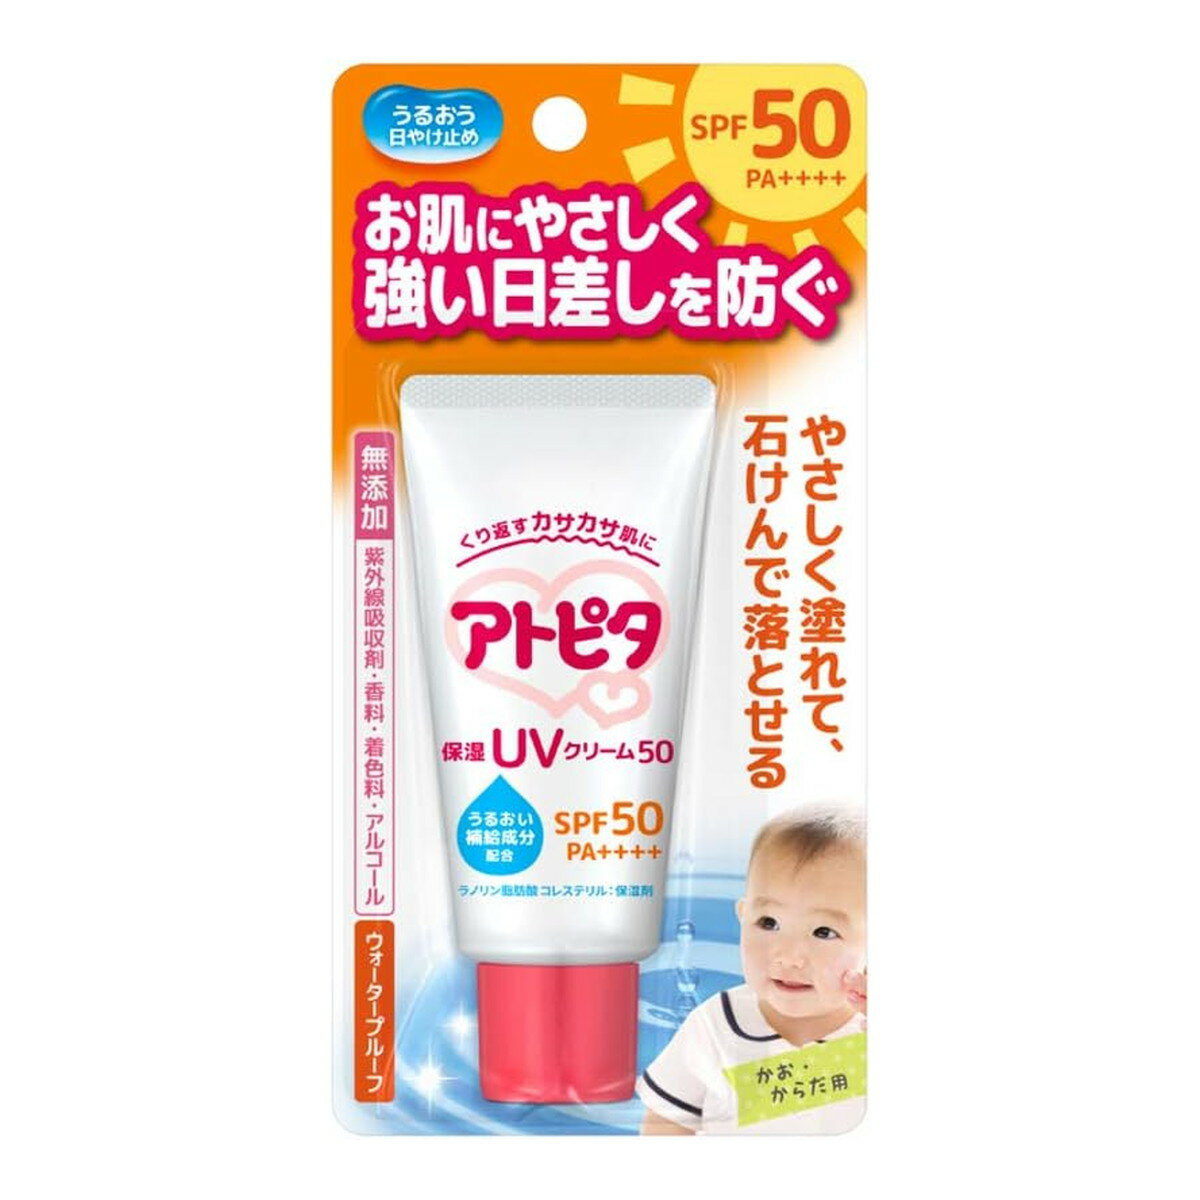 【サマーセール】丹平製薬 アトピタ 保湿 UV クリーム 30g SPF50